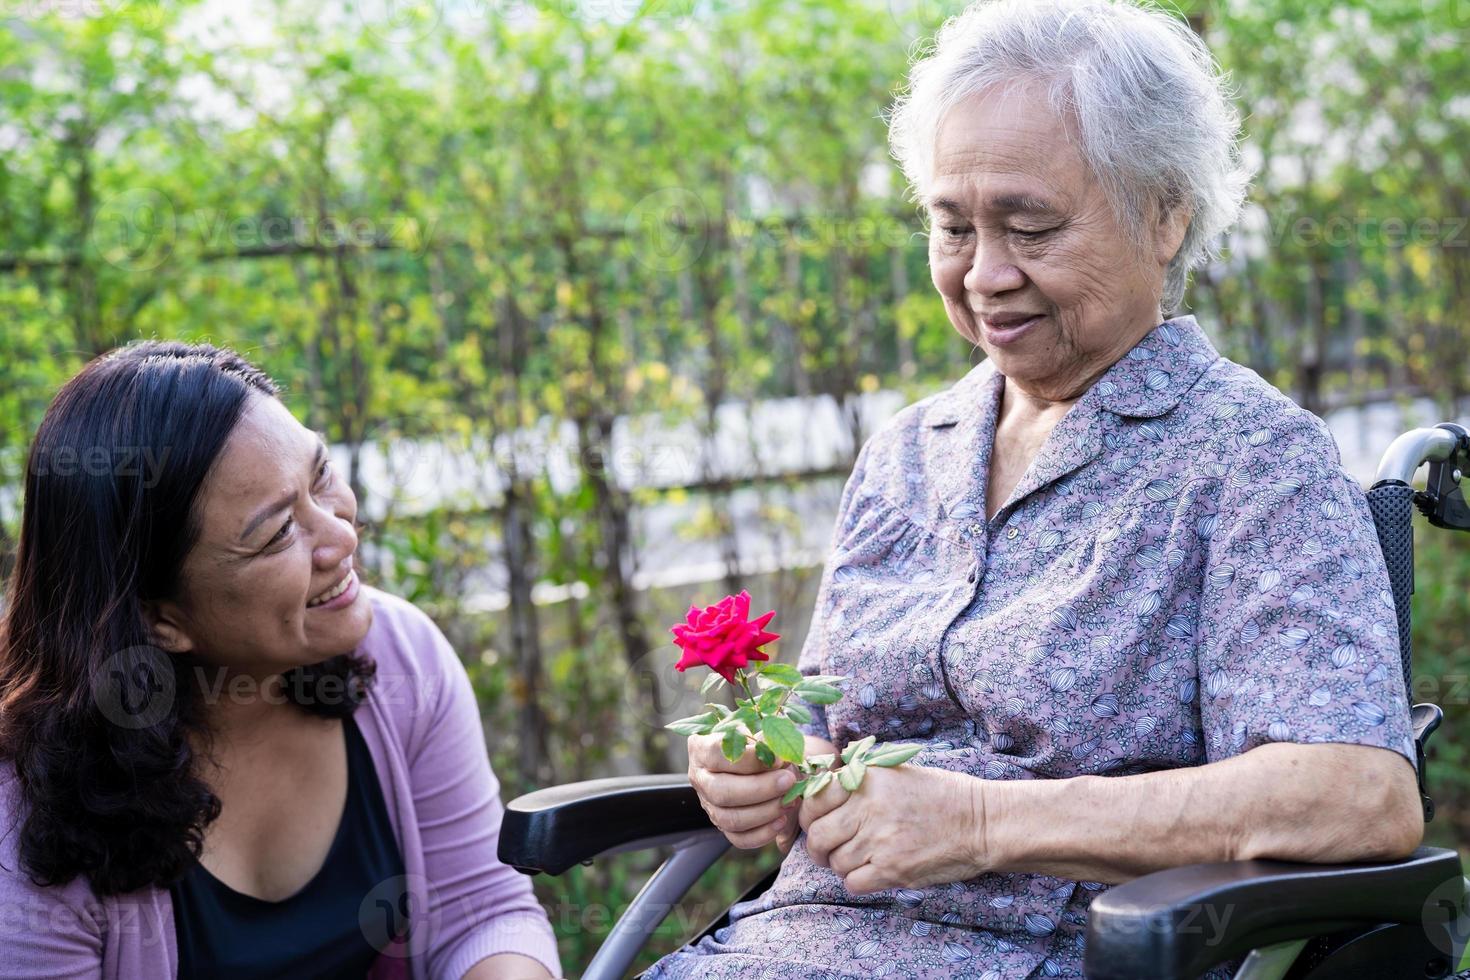 filha do cuidador abraçar e ajudar a mulher idosa asiática sênior ou idosa segurando uma rosa vermelha na cadeira de rodas no parque. foto